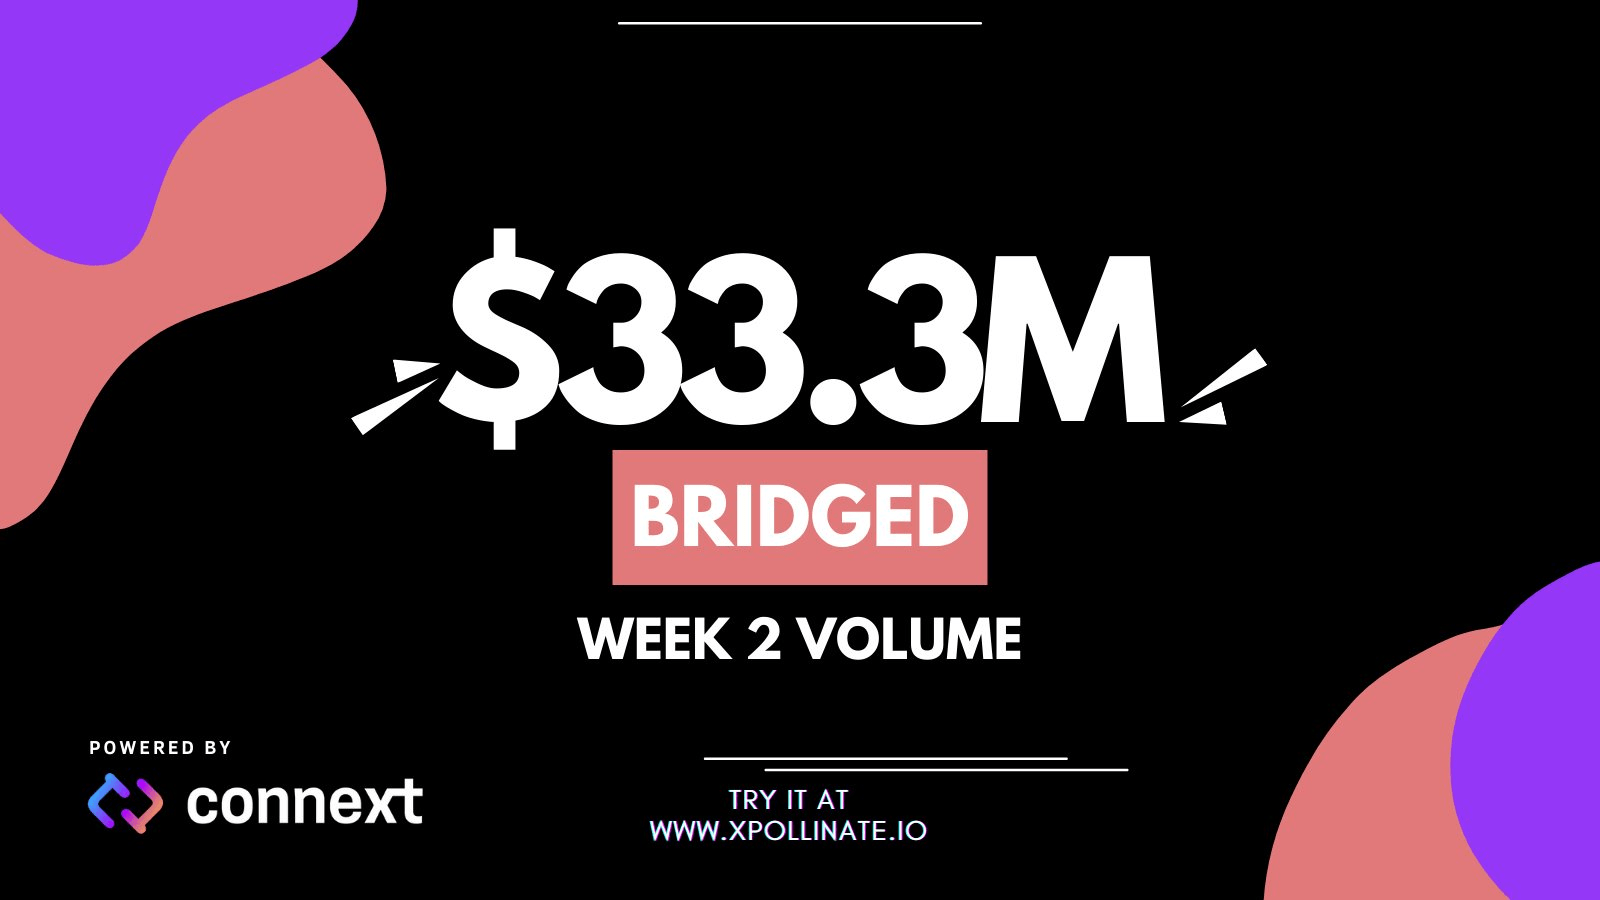 Khối lượng kể từ khi nxtp ra mắt: Tuần 1: 16 triệu đô la; Tuần 2: $ 33,3 triệu. Tăng trưởng hơn 100% trong một tuần